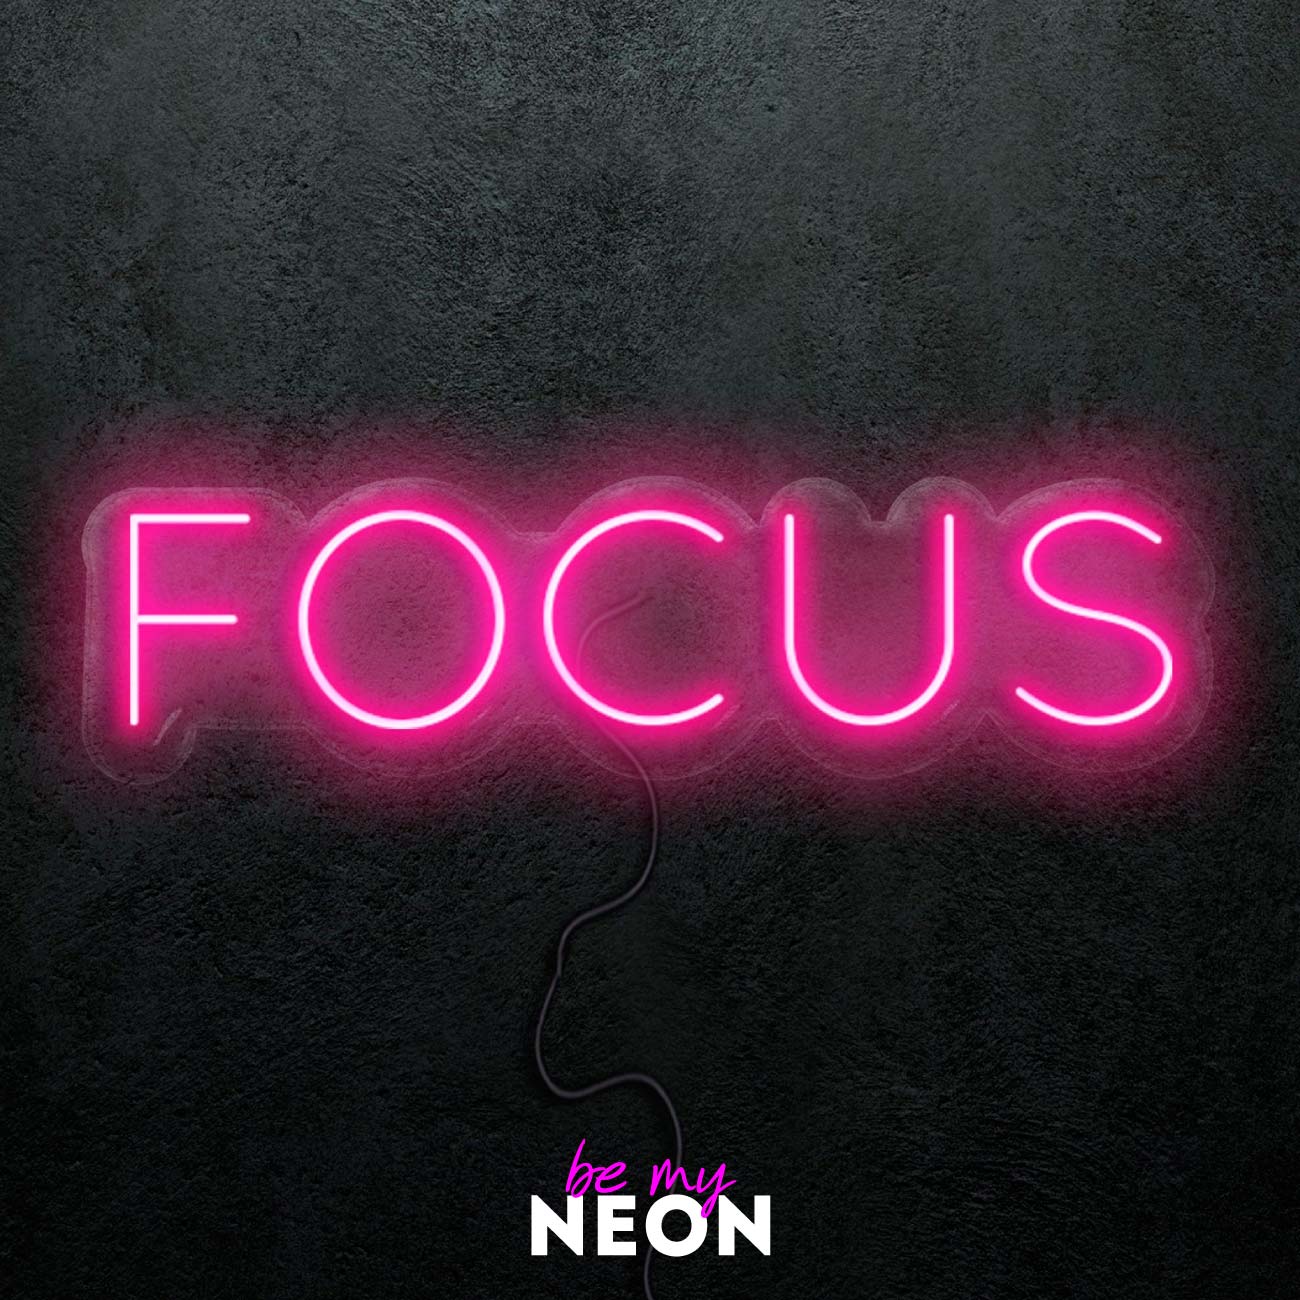 "FOCUS" LED Neonschild